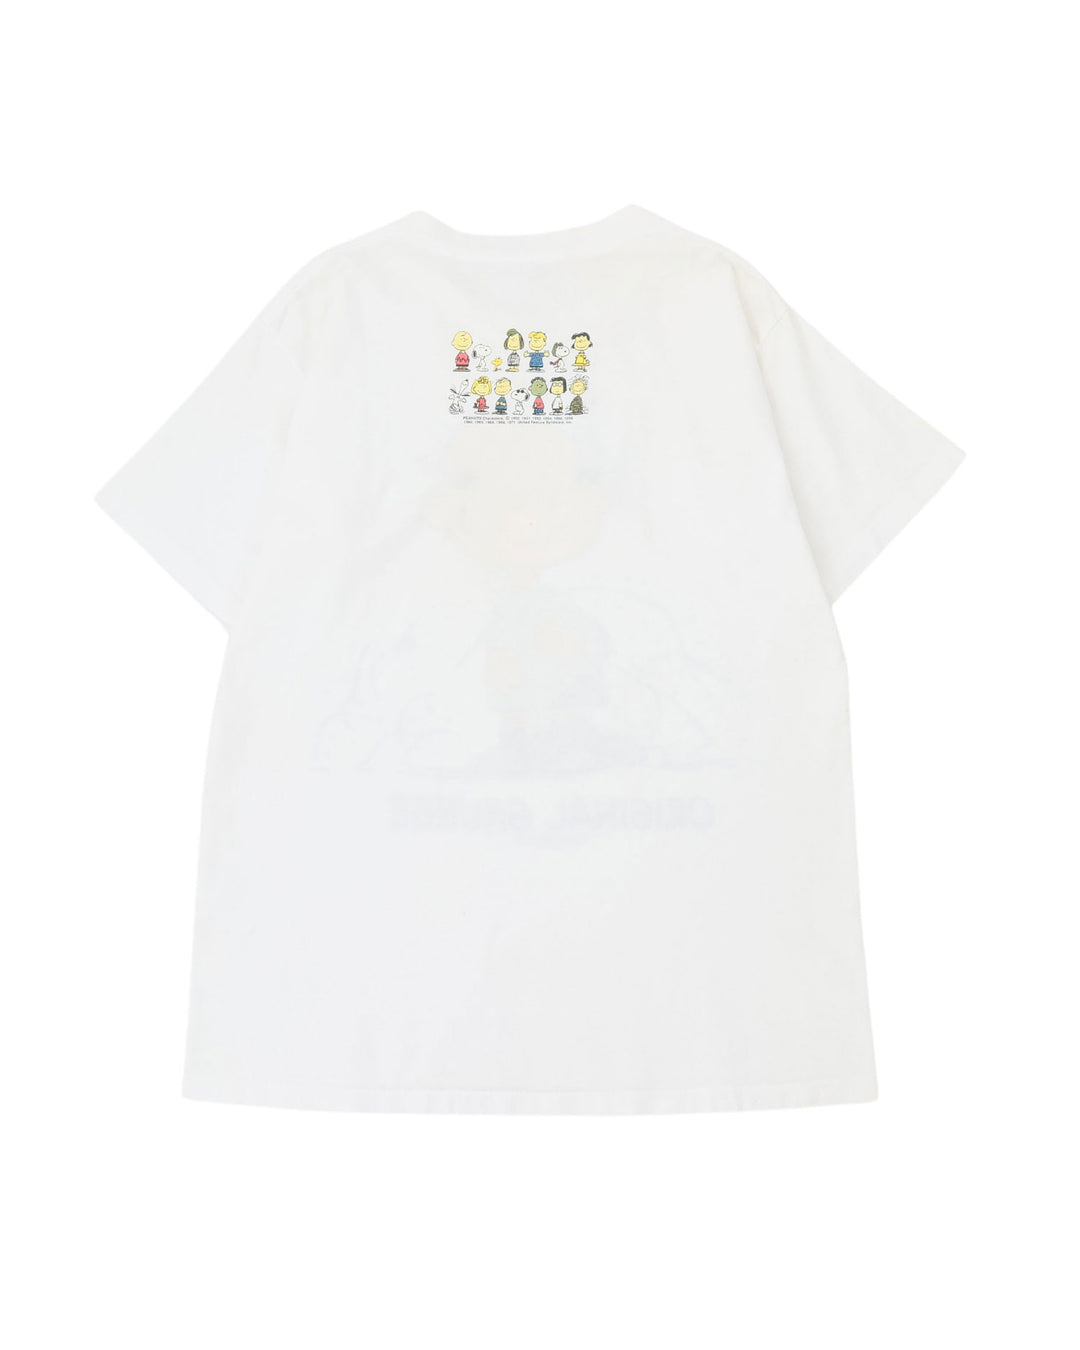 PIGPEN Original Grunge T-Shirt / White